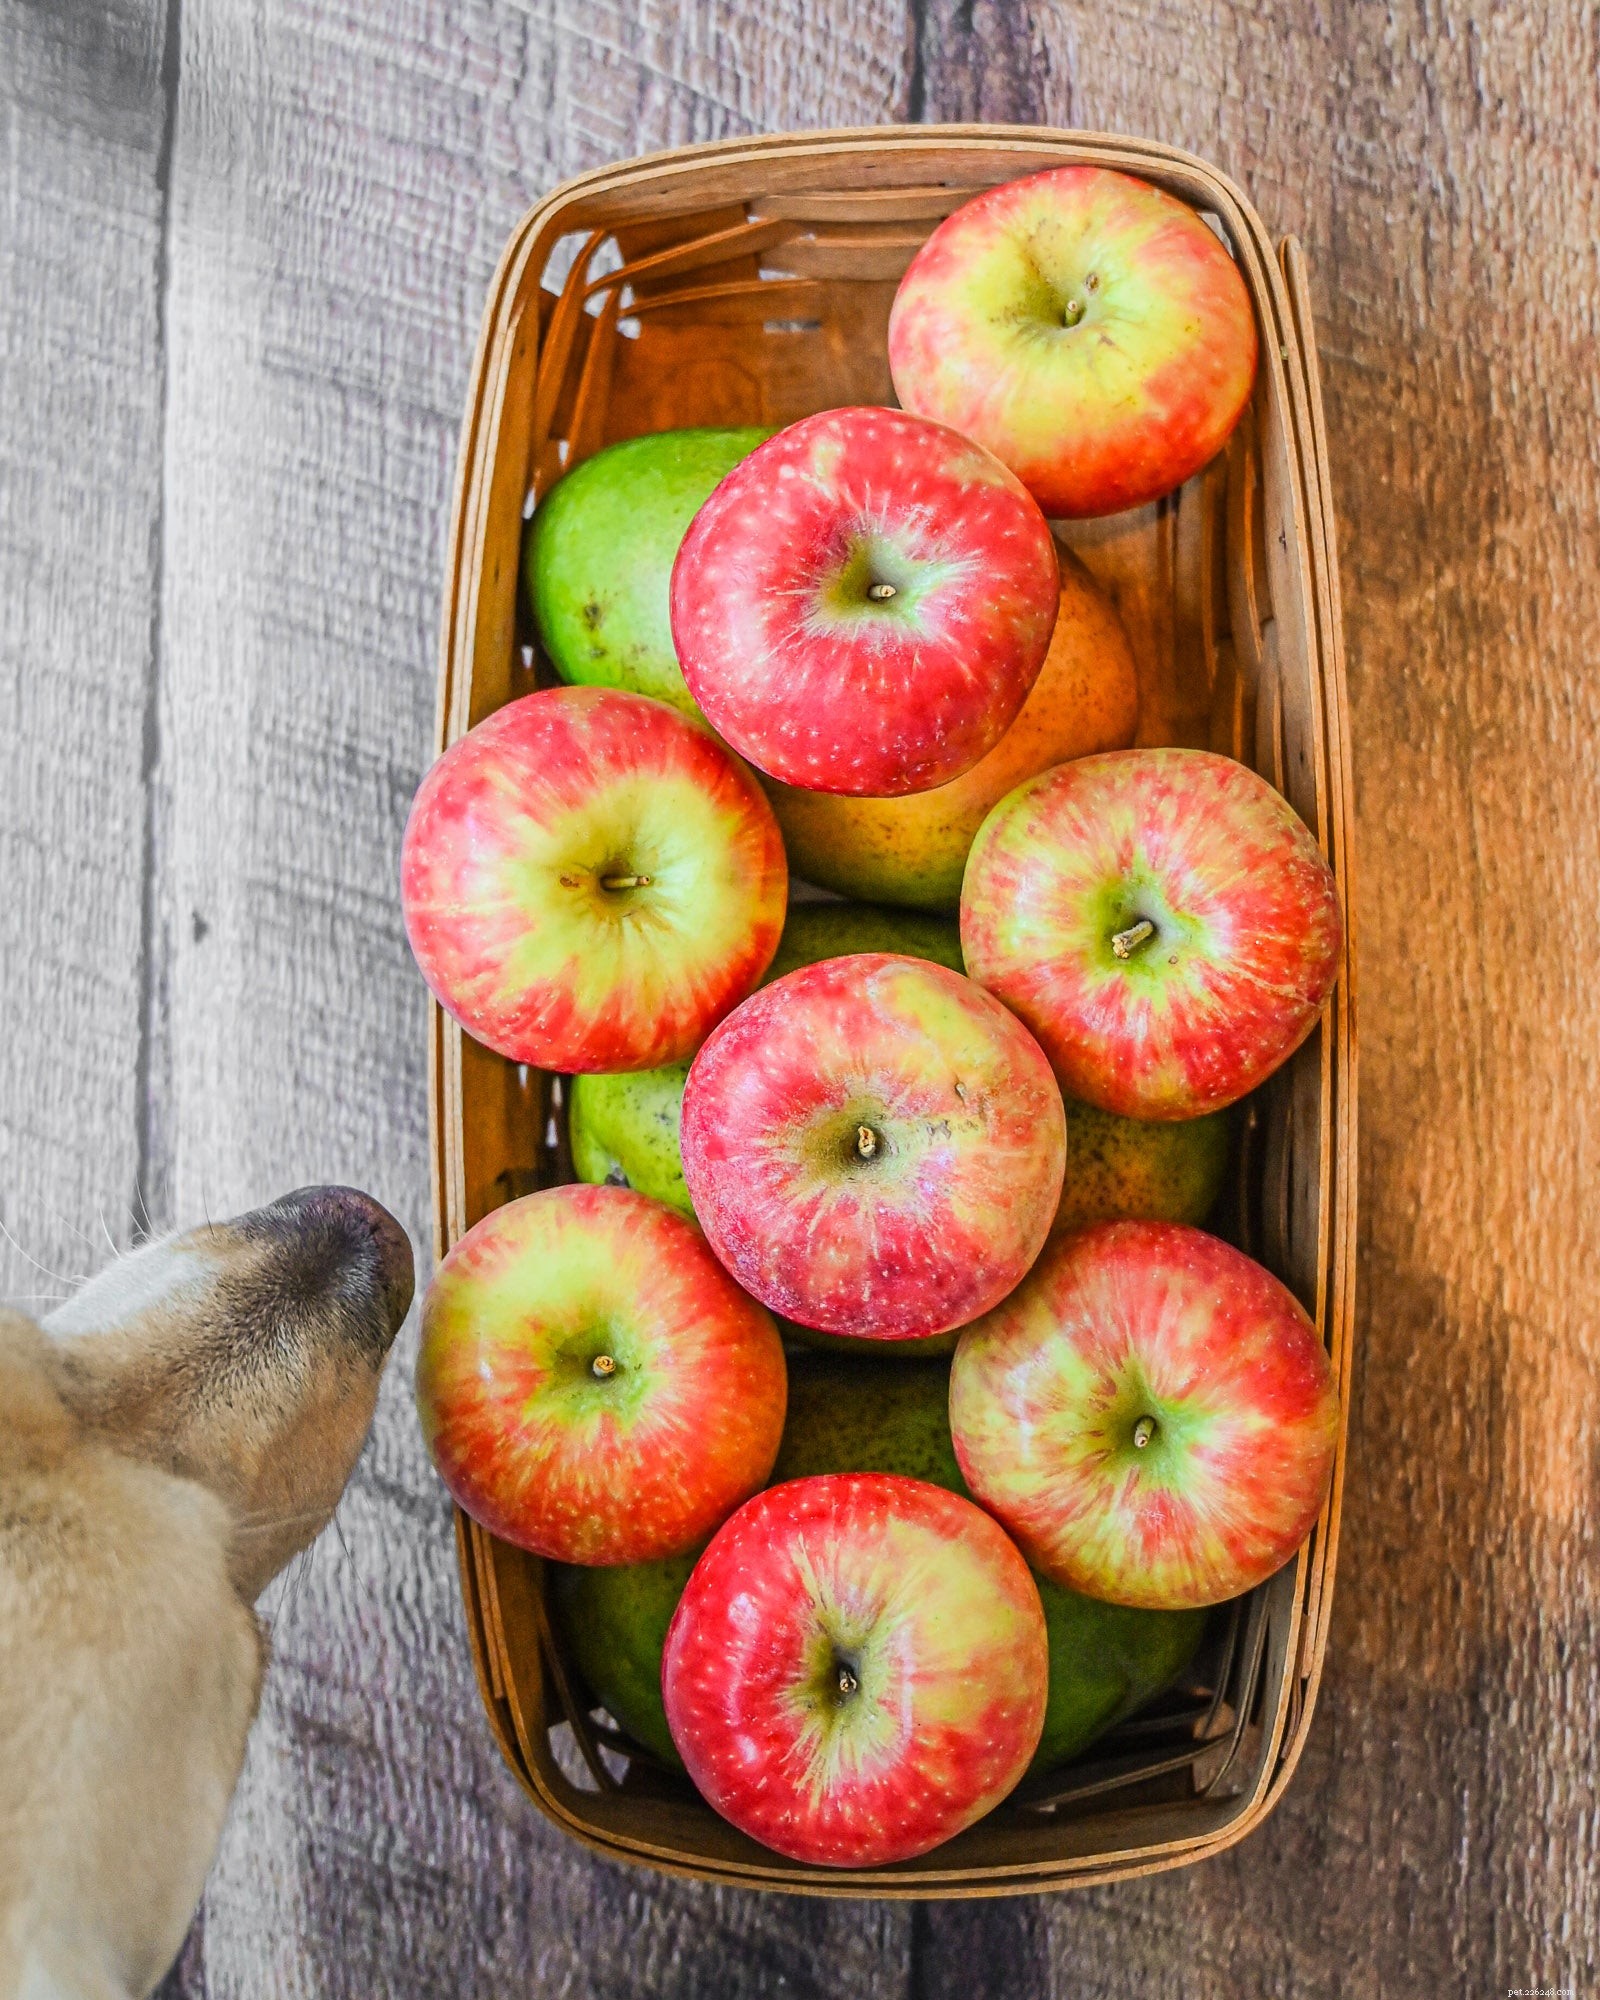 Mon chien peut-il manger des pommes ?